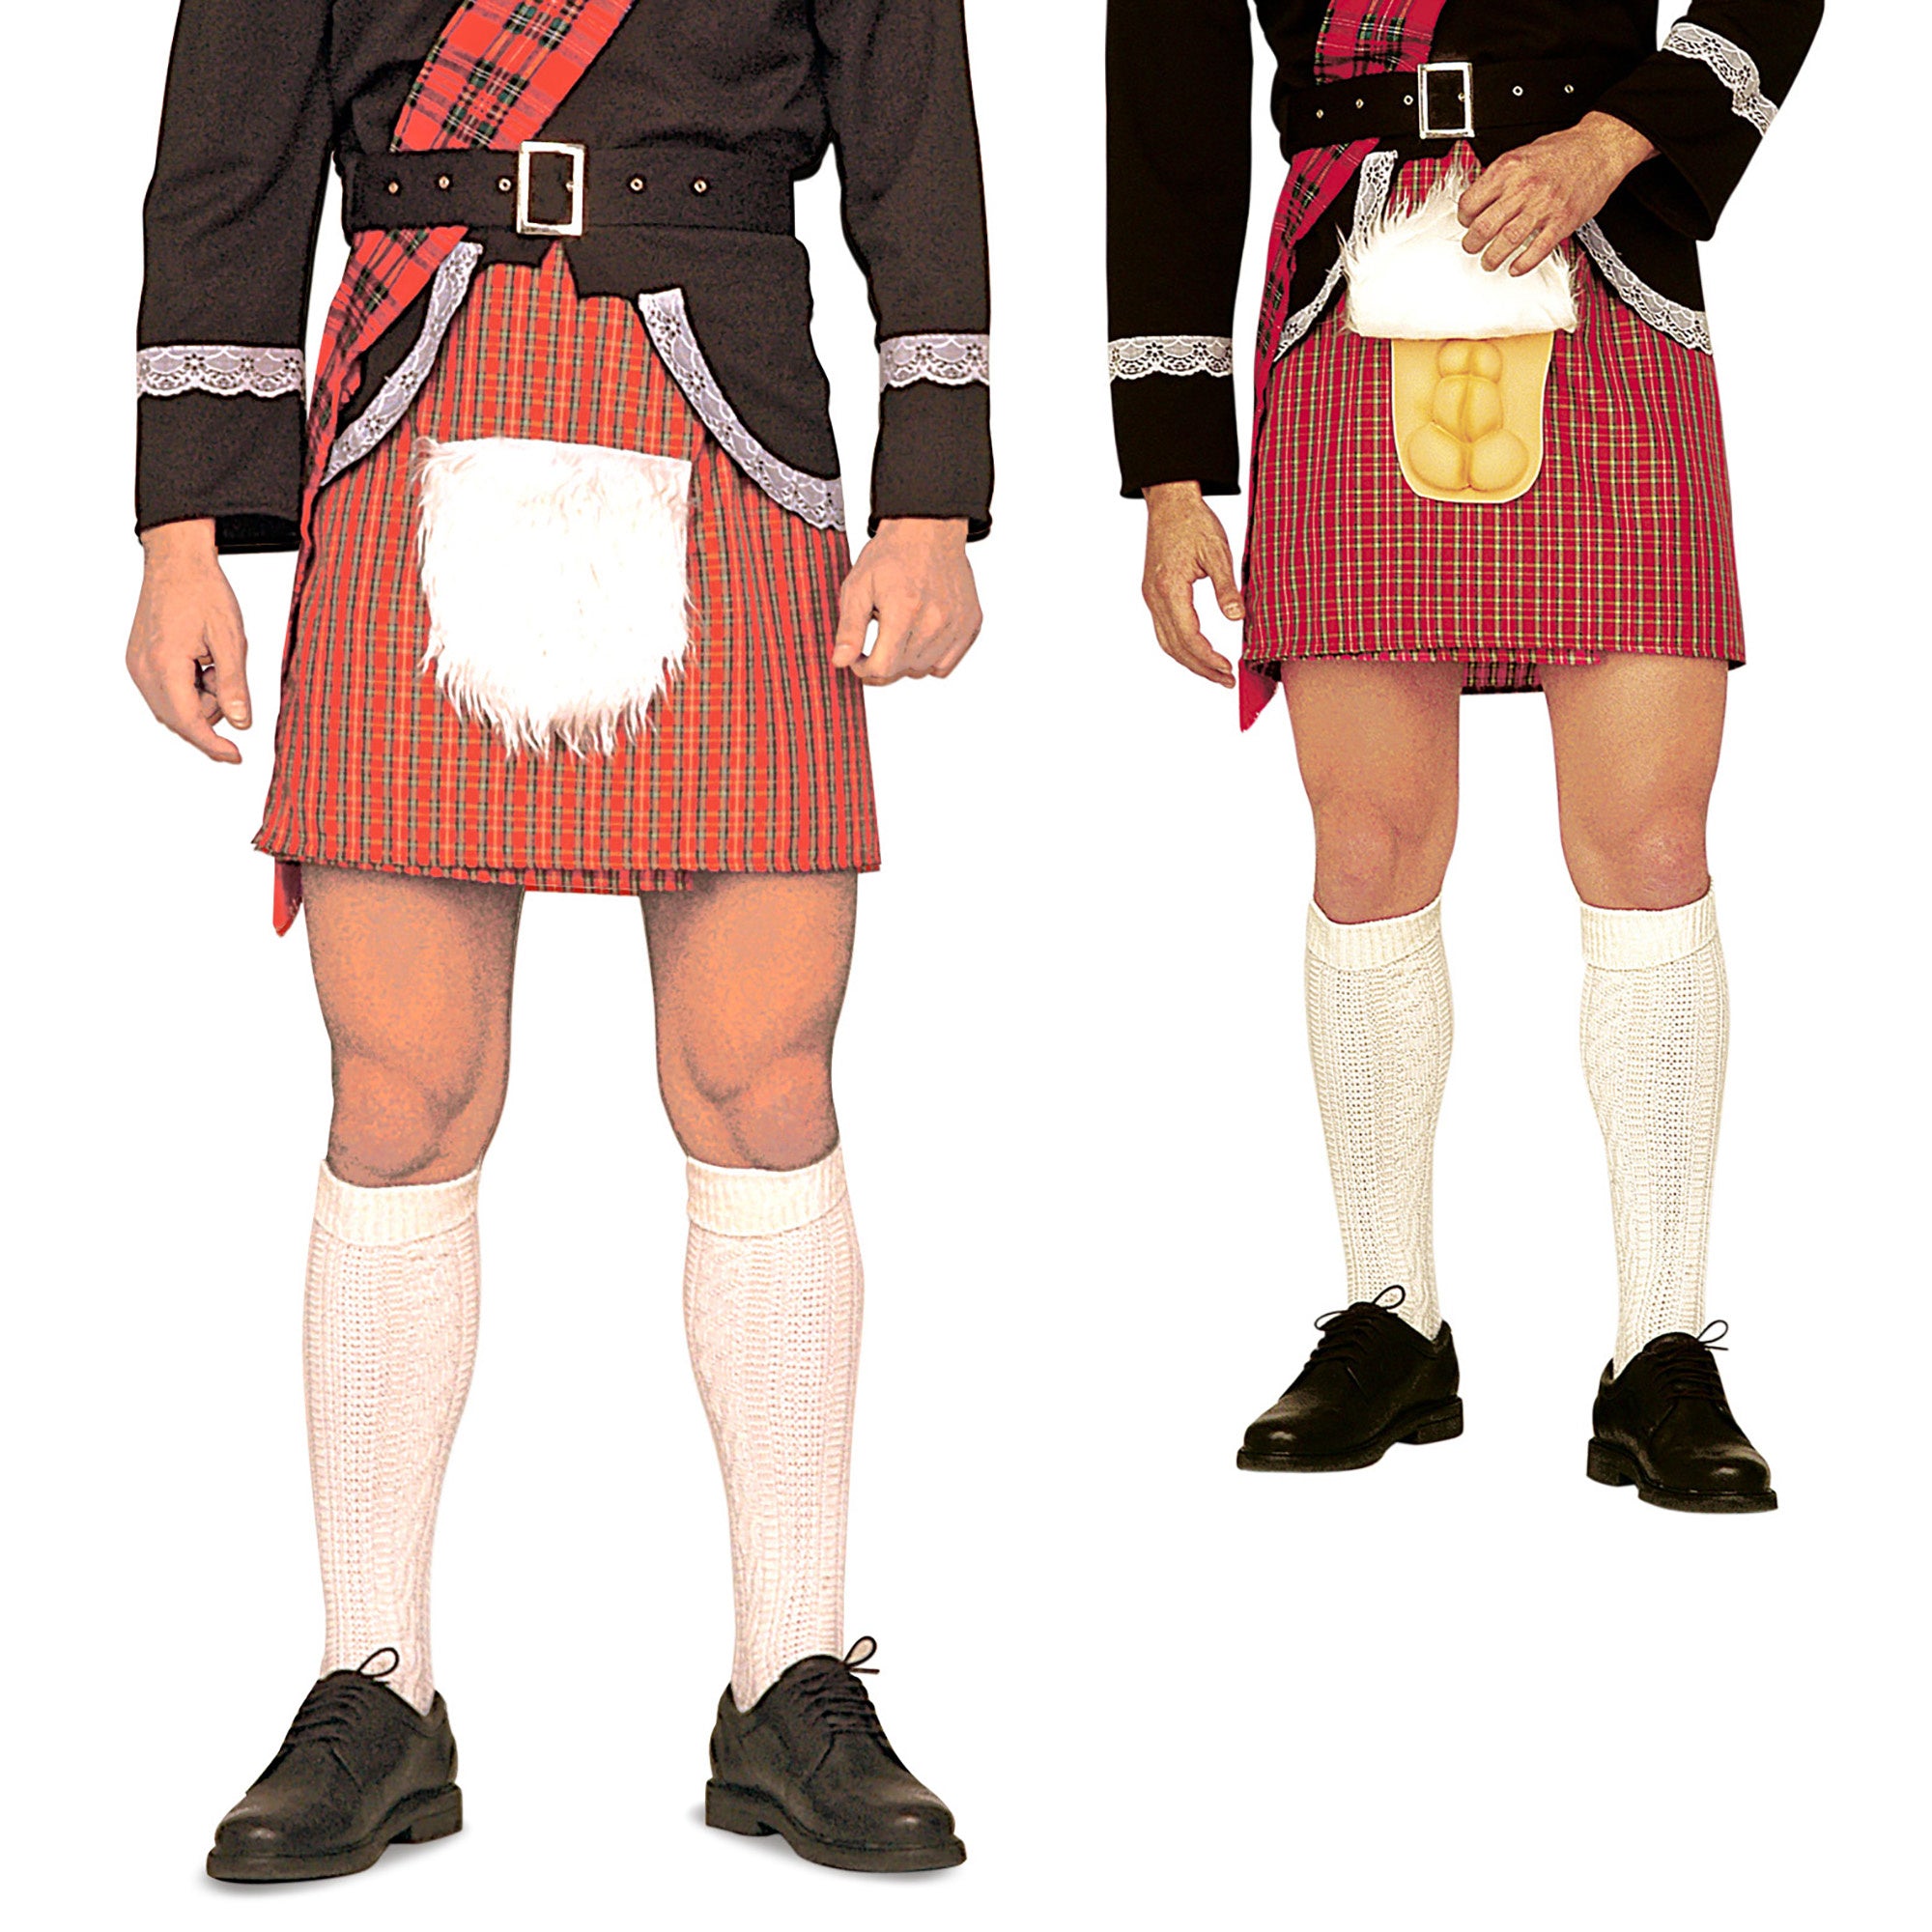 Grappige Schotse kilt voor volwassenen  - Verkleedkleding - One size